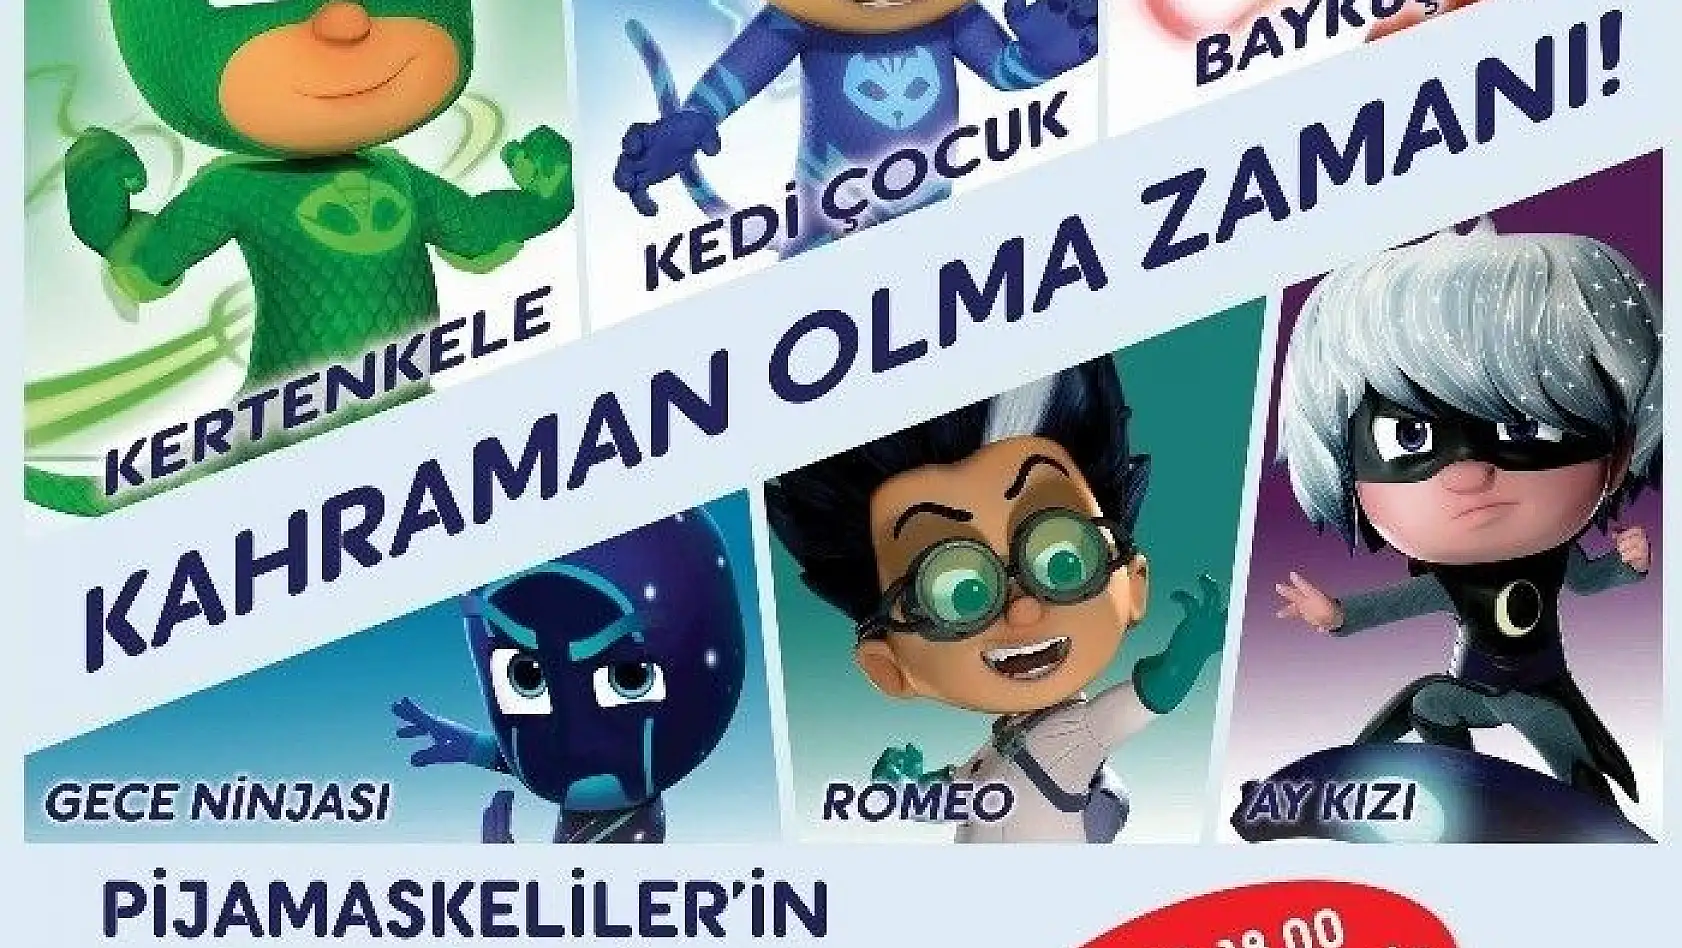 Pijamaskeliler'in maceralı dünyası Forum Kayseri'de
